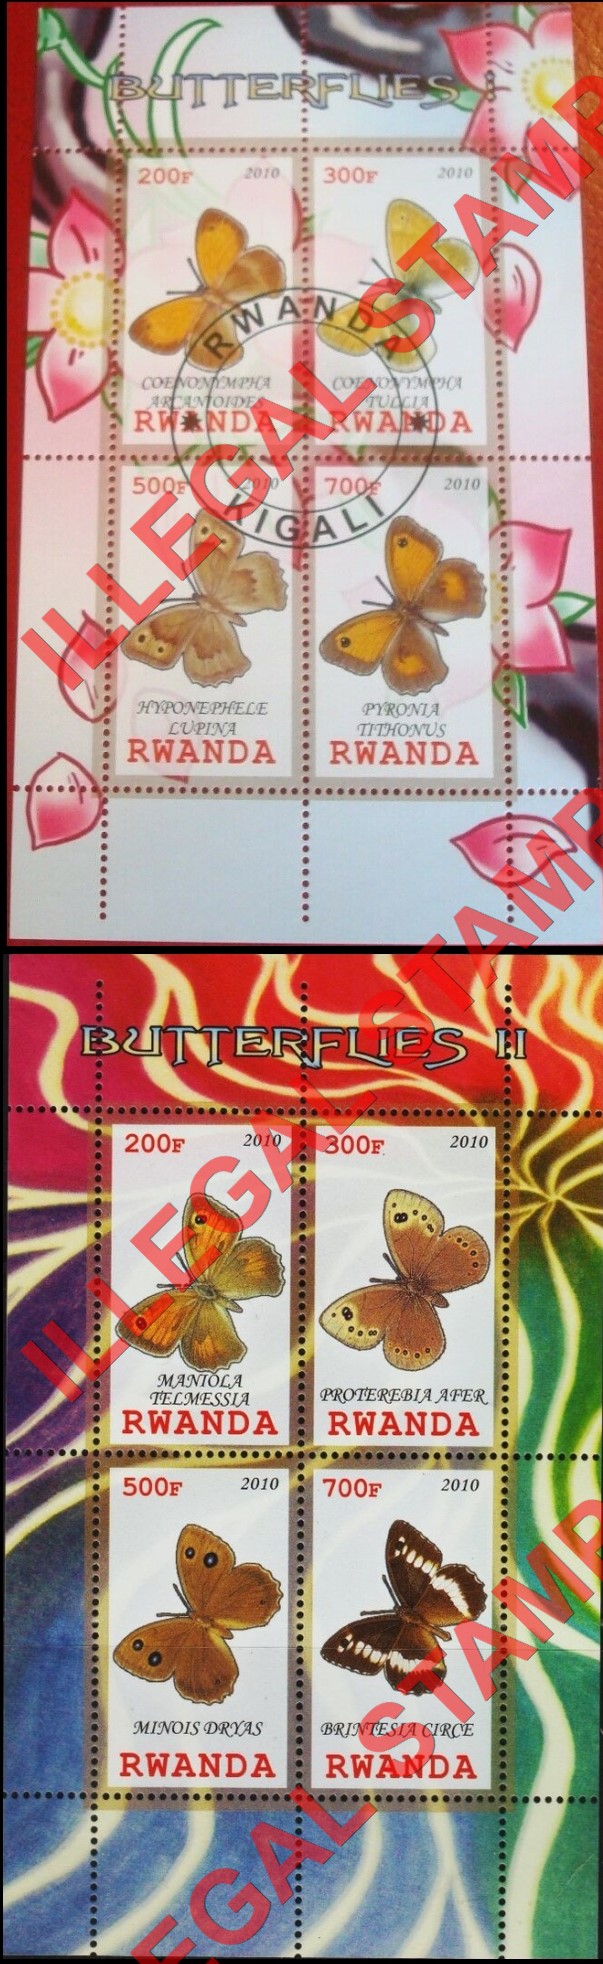 Rwanda 2010 Butterflies Illegal Stamp Souvenir Sheets of 4